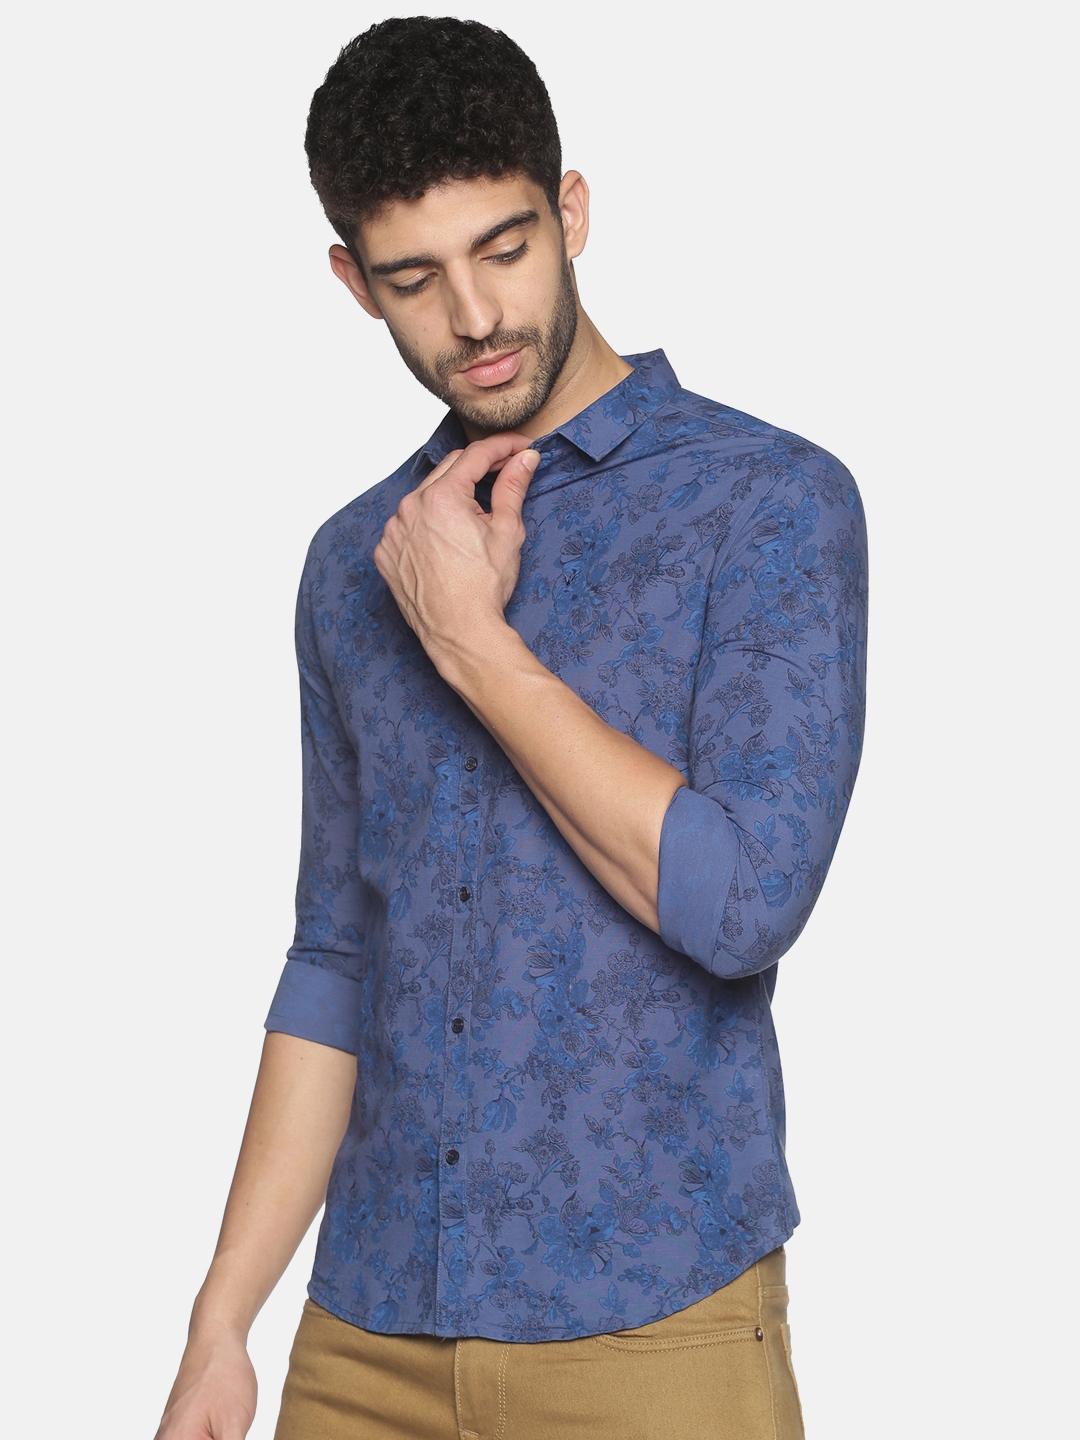 Men's Blue Cotton Floral Casual Shirts